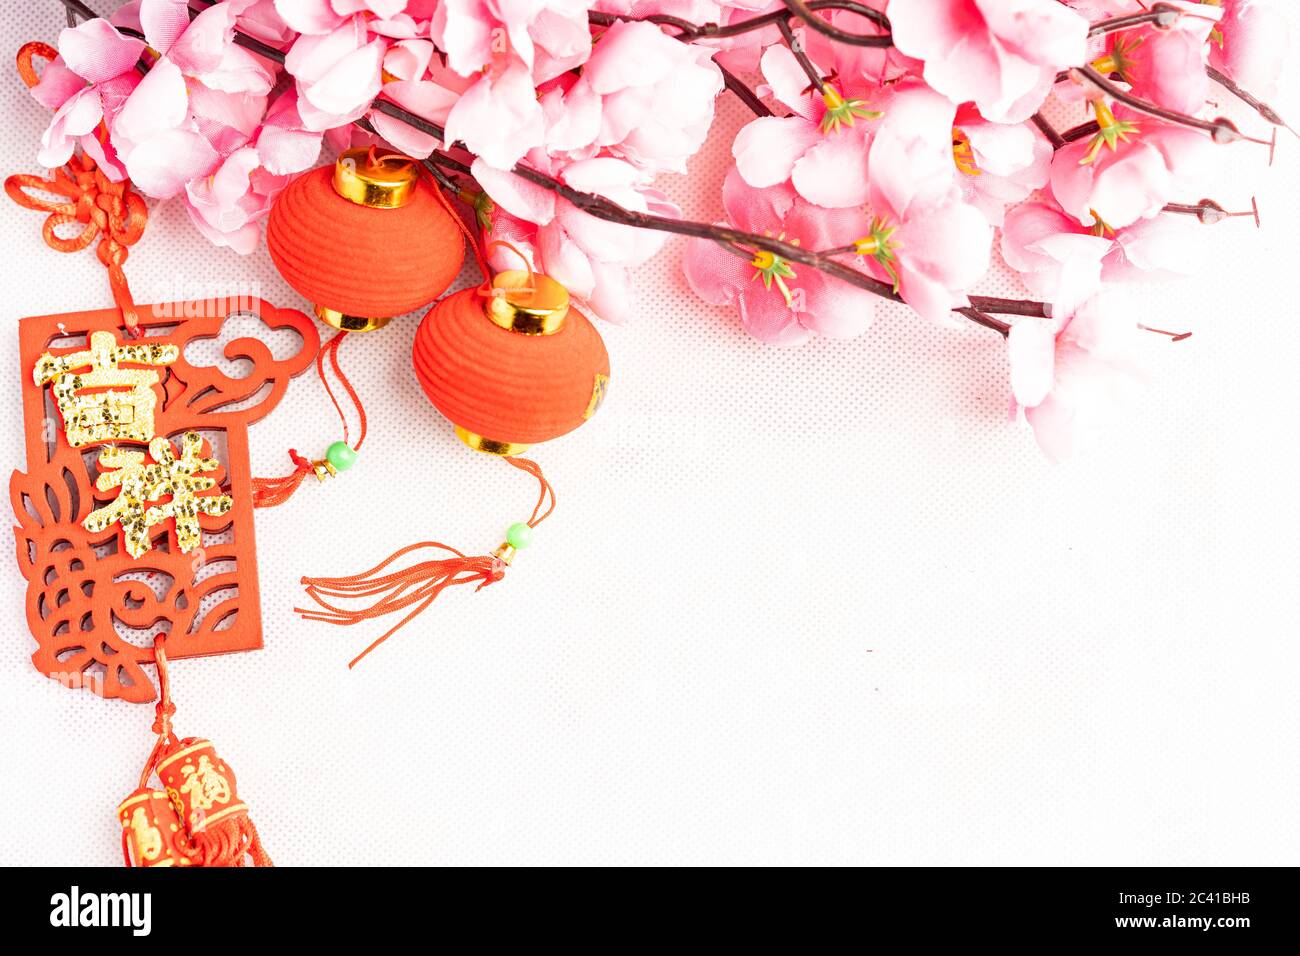 Trang trí Tết Trung Quốc: Tết Trung Quốc được biết đến với những trang phục đa dạng và những màu sắc rực rỡ, đặc trưng nhất là trang trí Tết. Từ bên trong đến bên ngoài, không gian xung quanh sẽ được tràn đầy những hoa quả, cây cối và những sinh vật độc đáo được trang trí bằng kỹ thuật nghệ thuật cao.